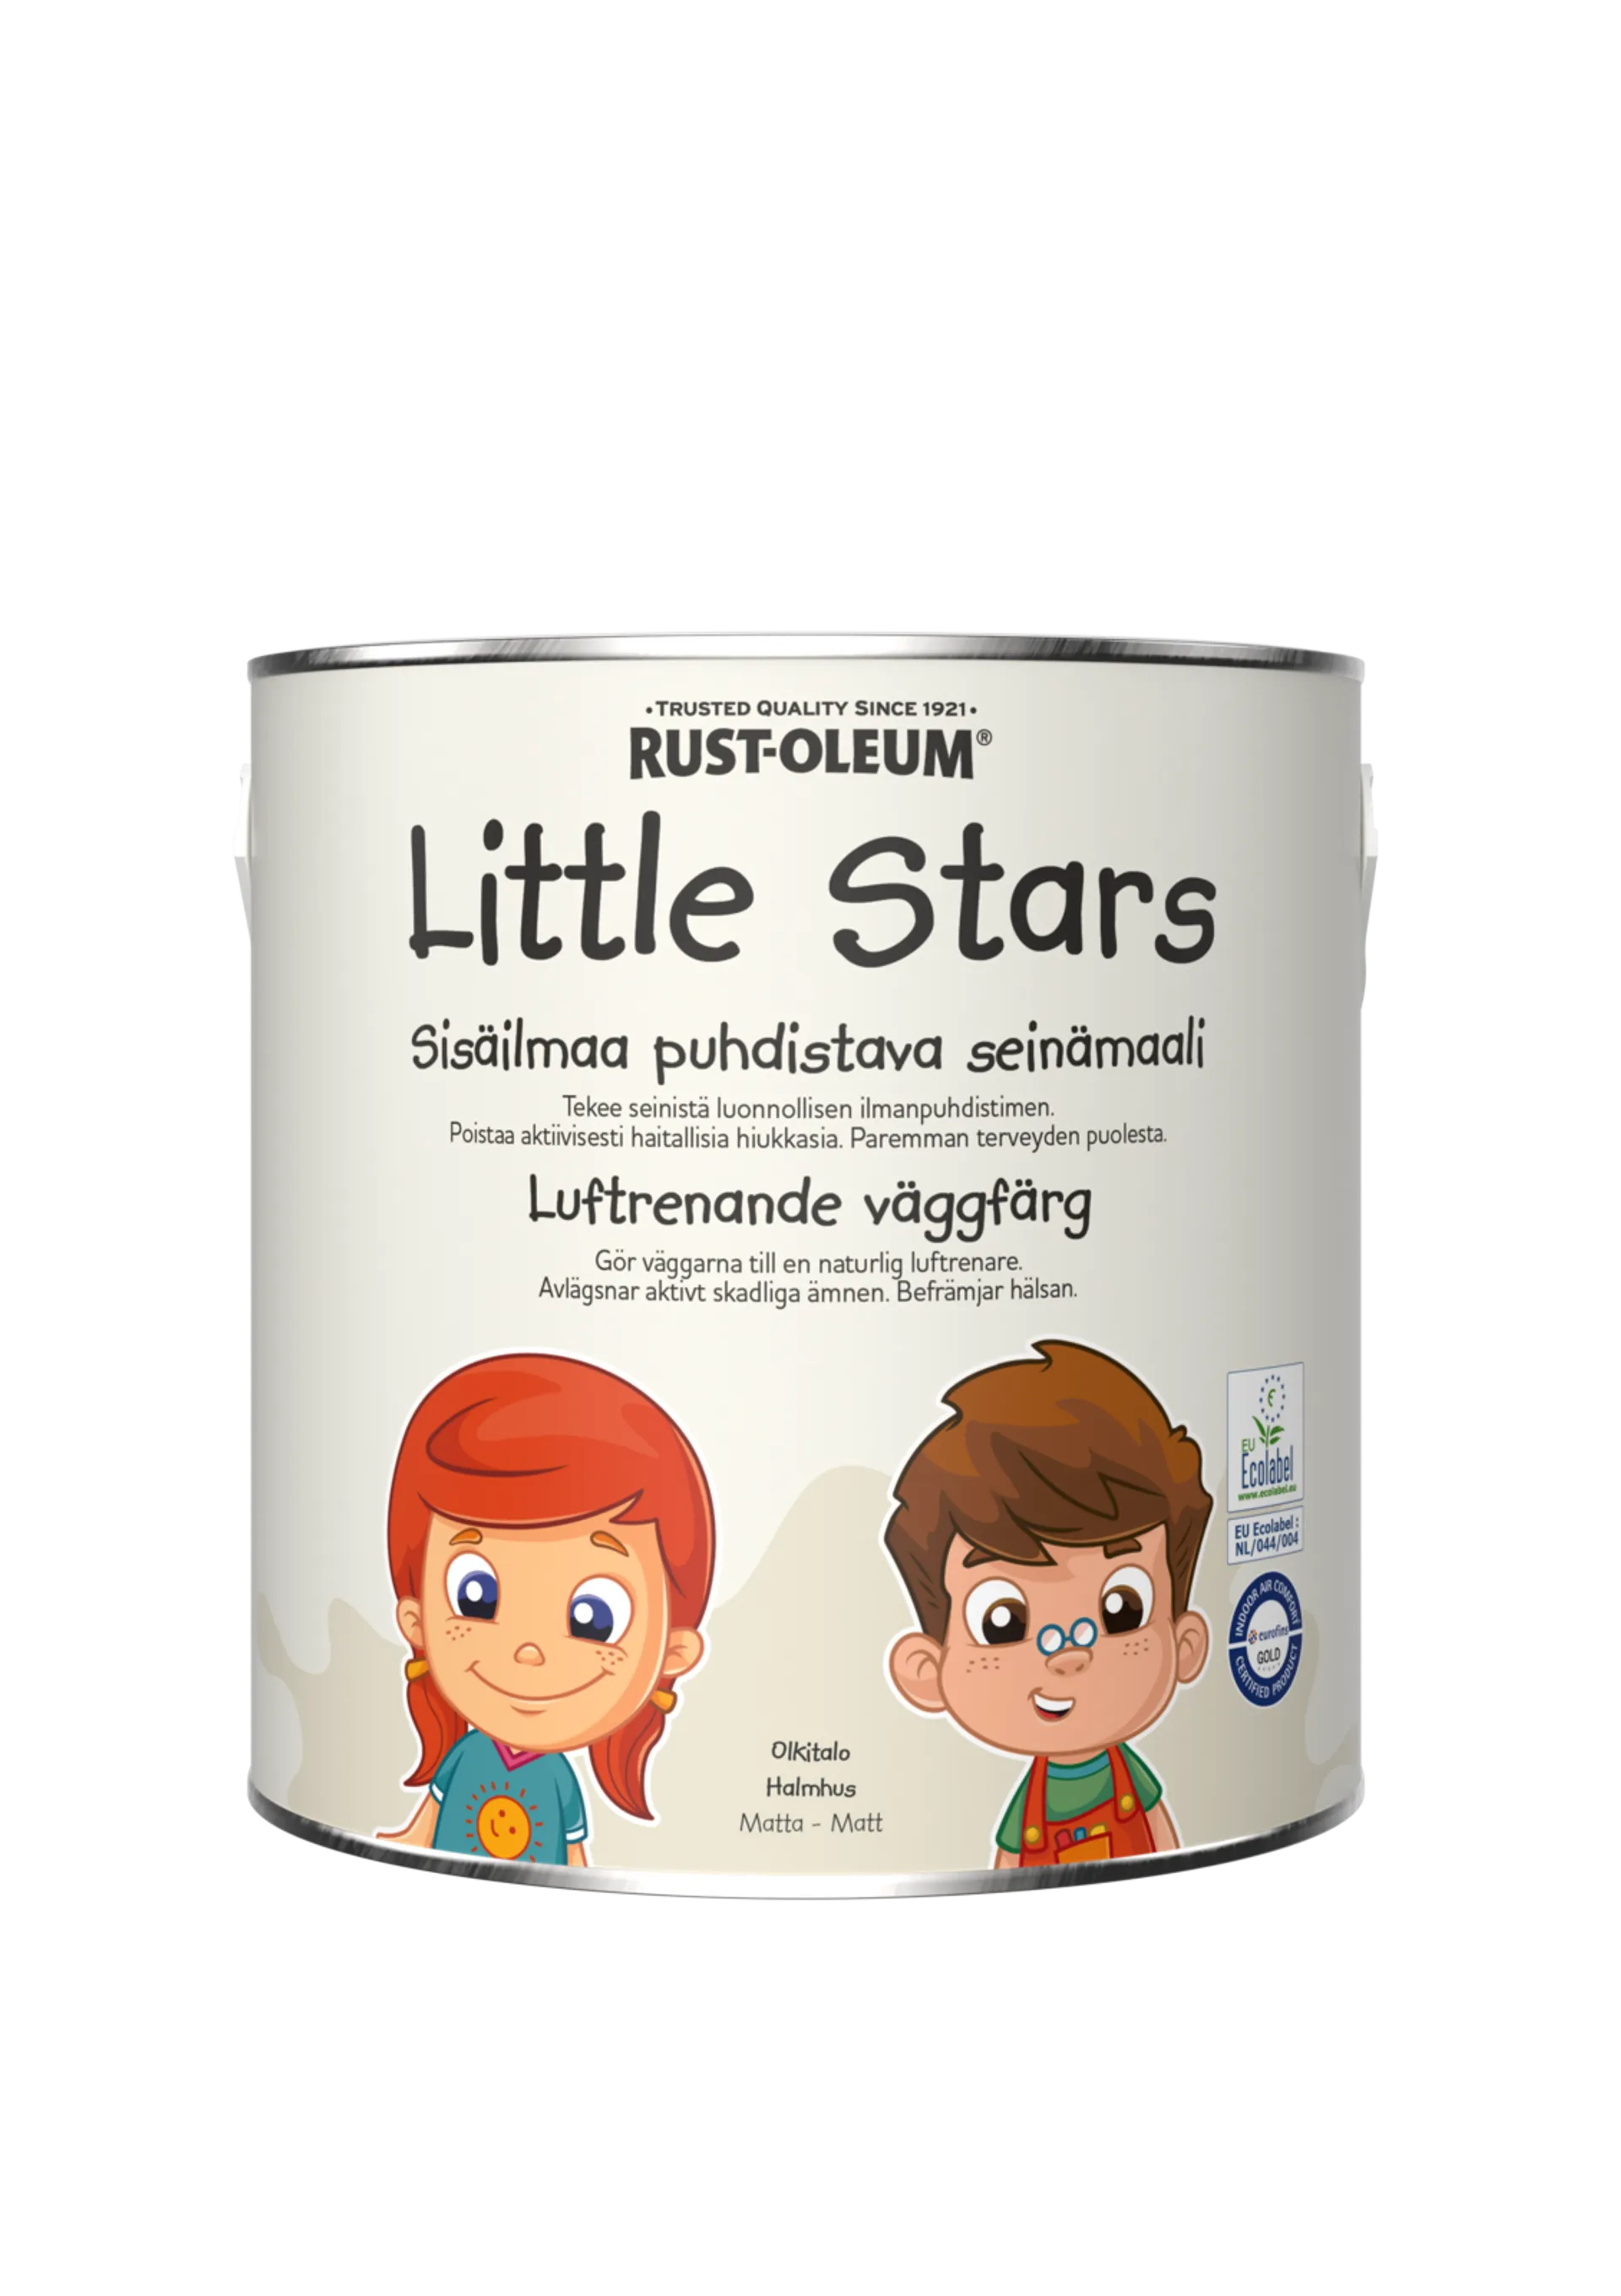 Rust-Oleum Little Stars Sisäilmaa puhdistava Seinämaali 2,5L Olkitalo